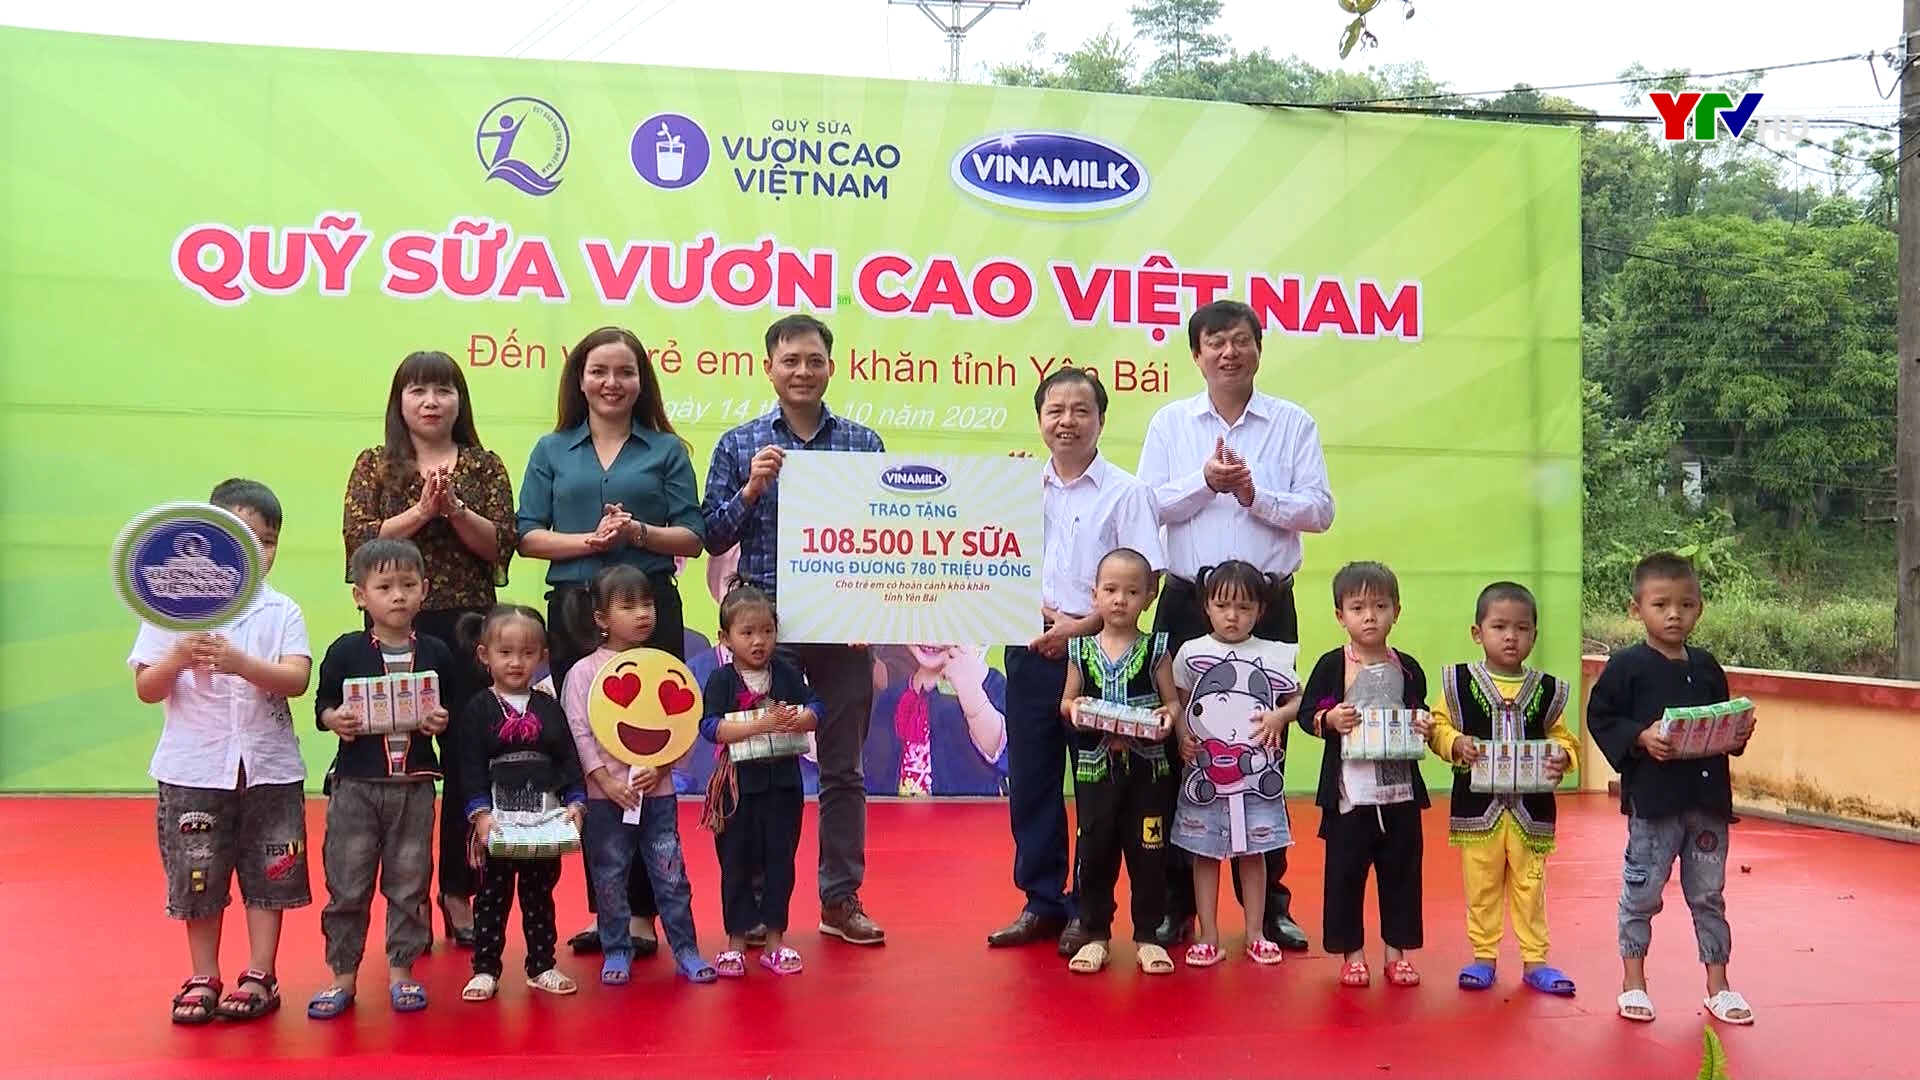 108.500 hộp sữa từ chương trình "Quỹ sữa vươn cao Việt Nam" được trao tặng cho trẻ em có hoàn cảnh khó khăn tỉnh Yên Bái